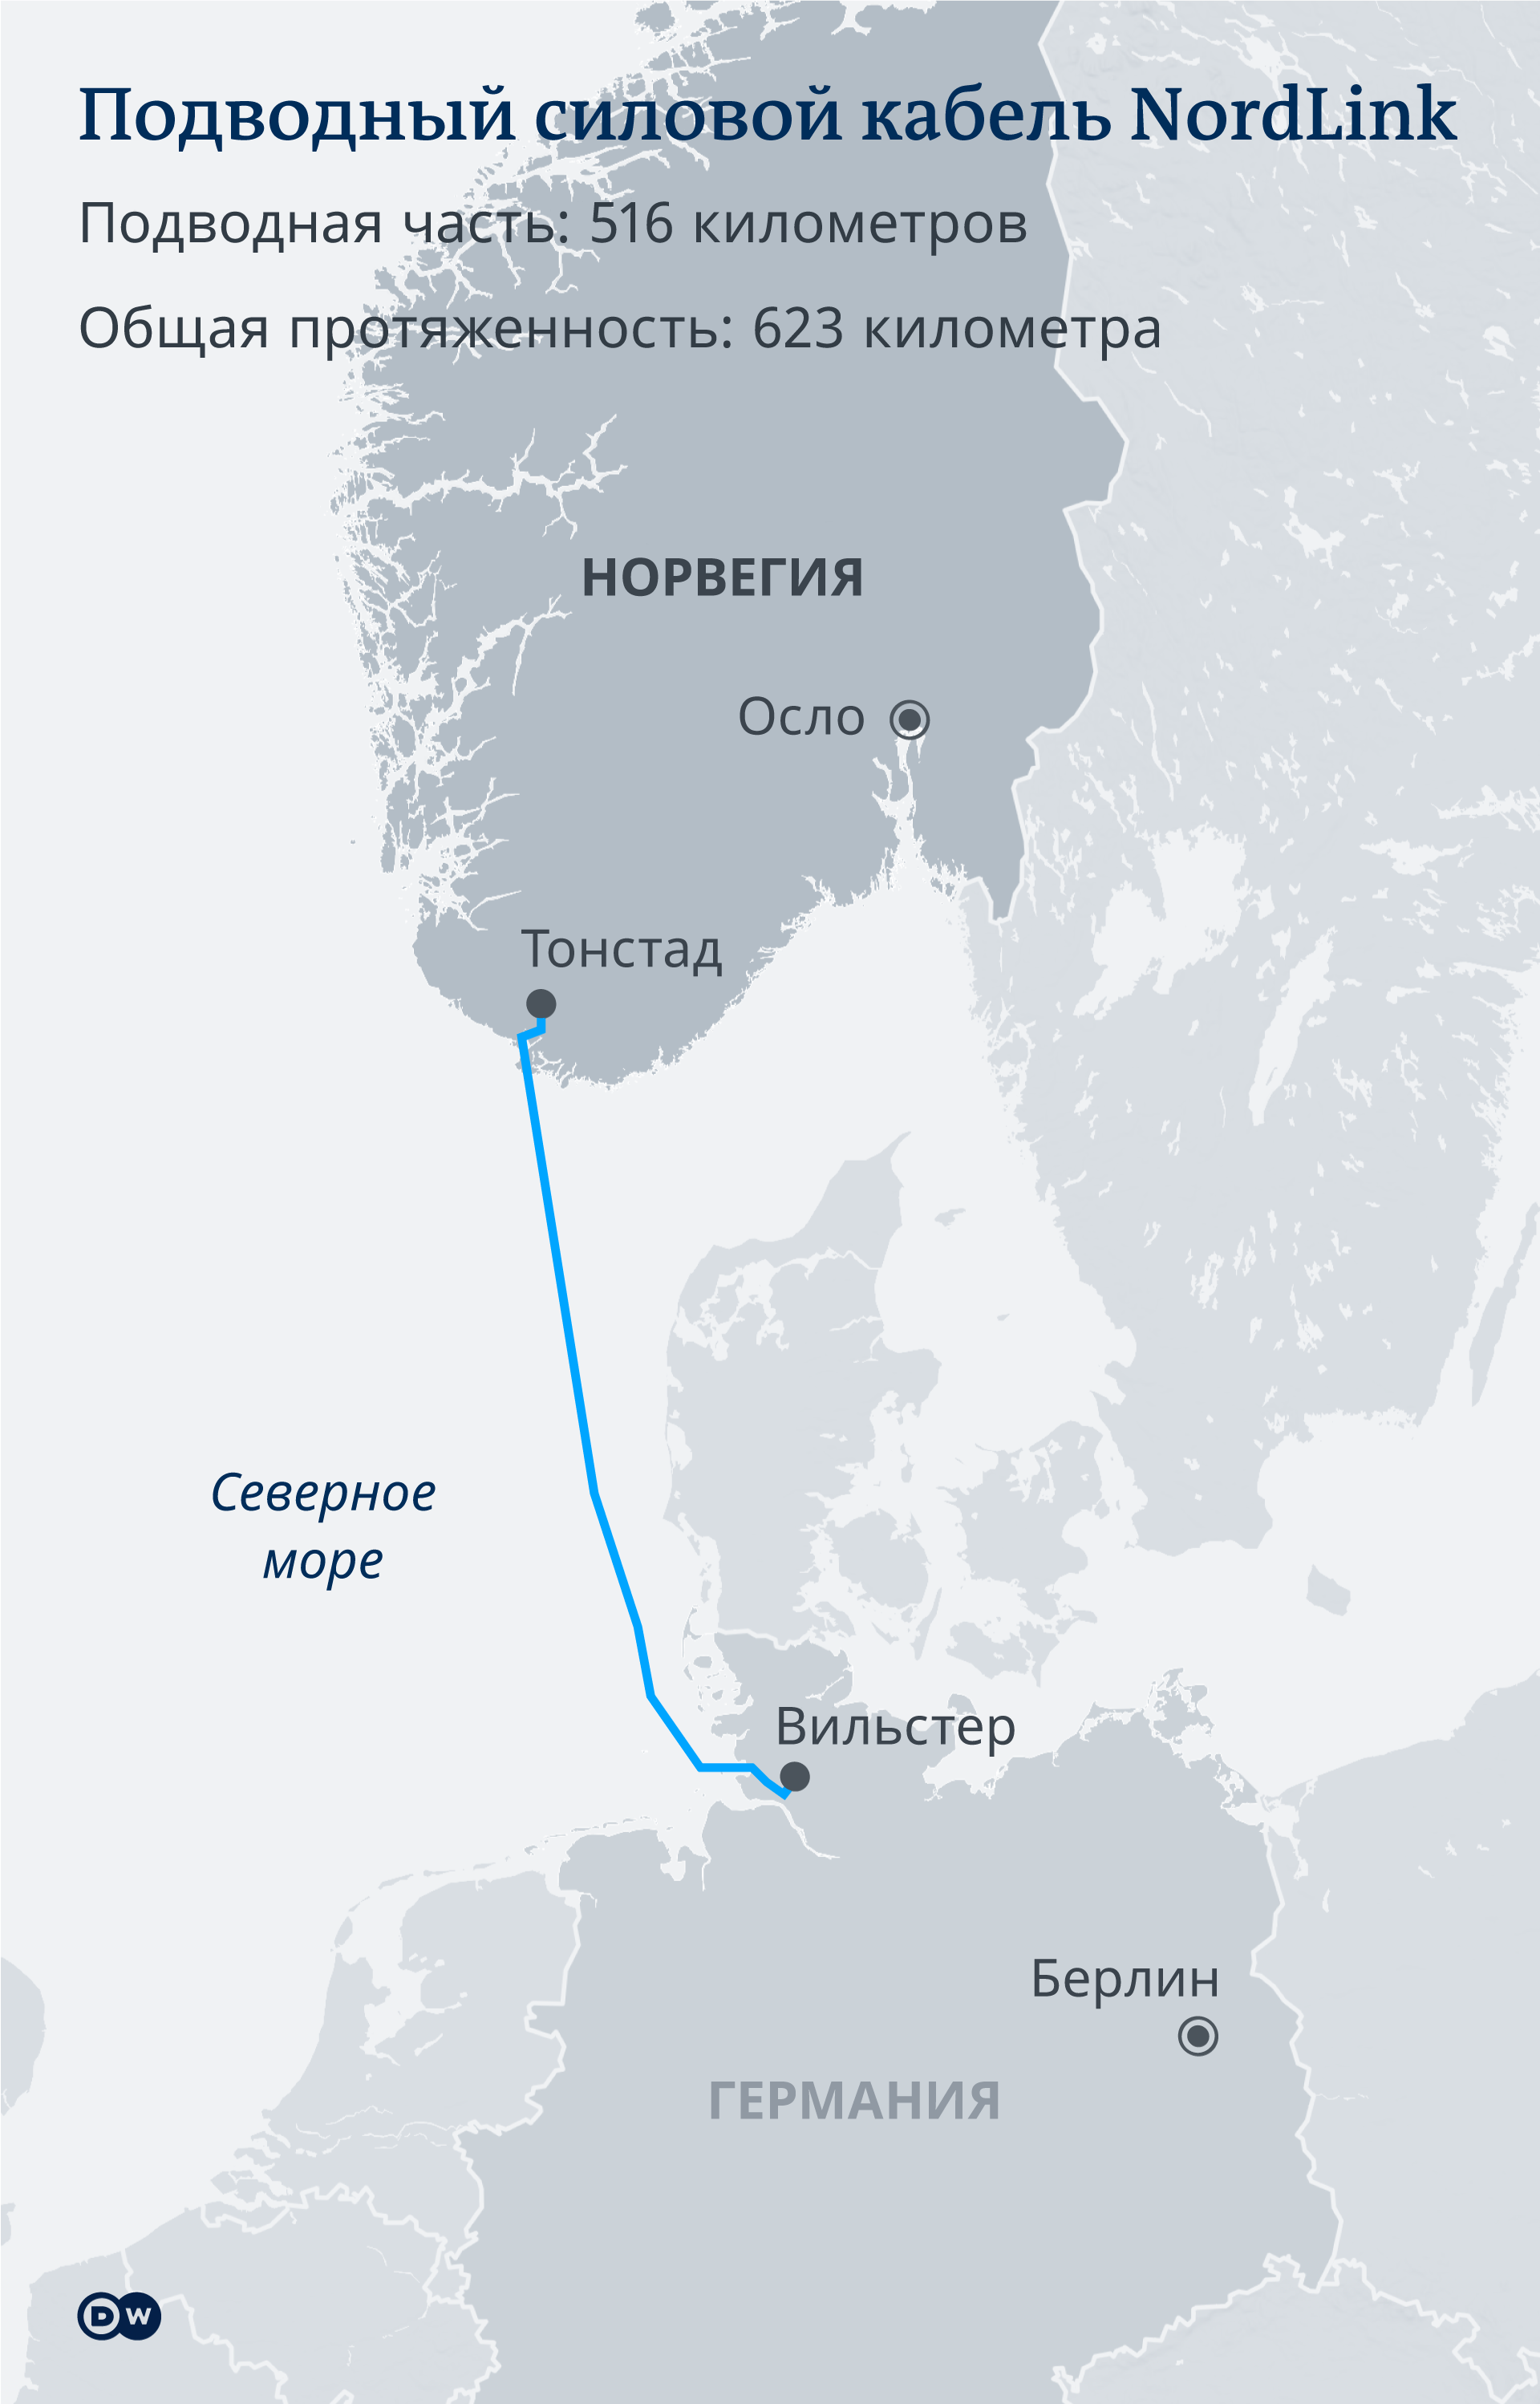 Инфографика Подводный силовой кабель NordLink